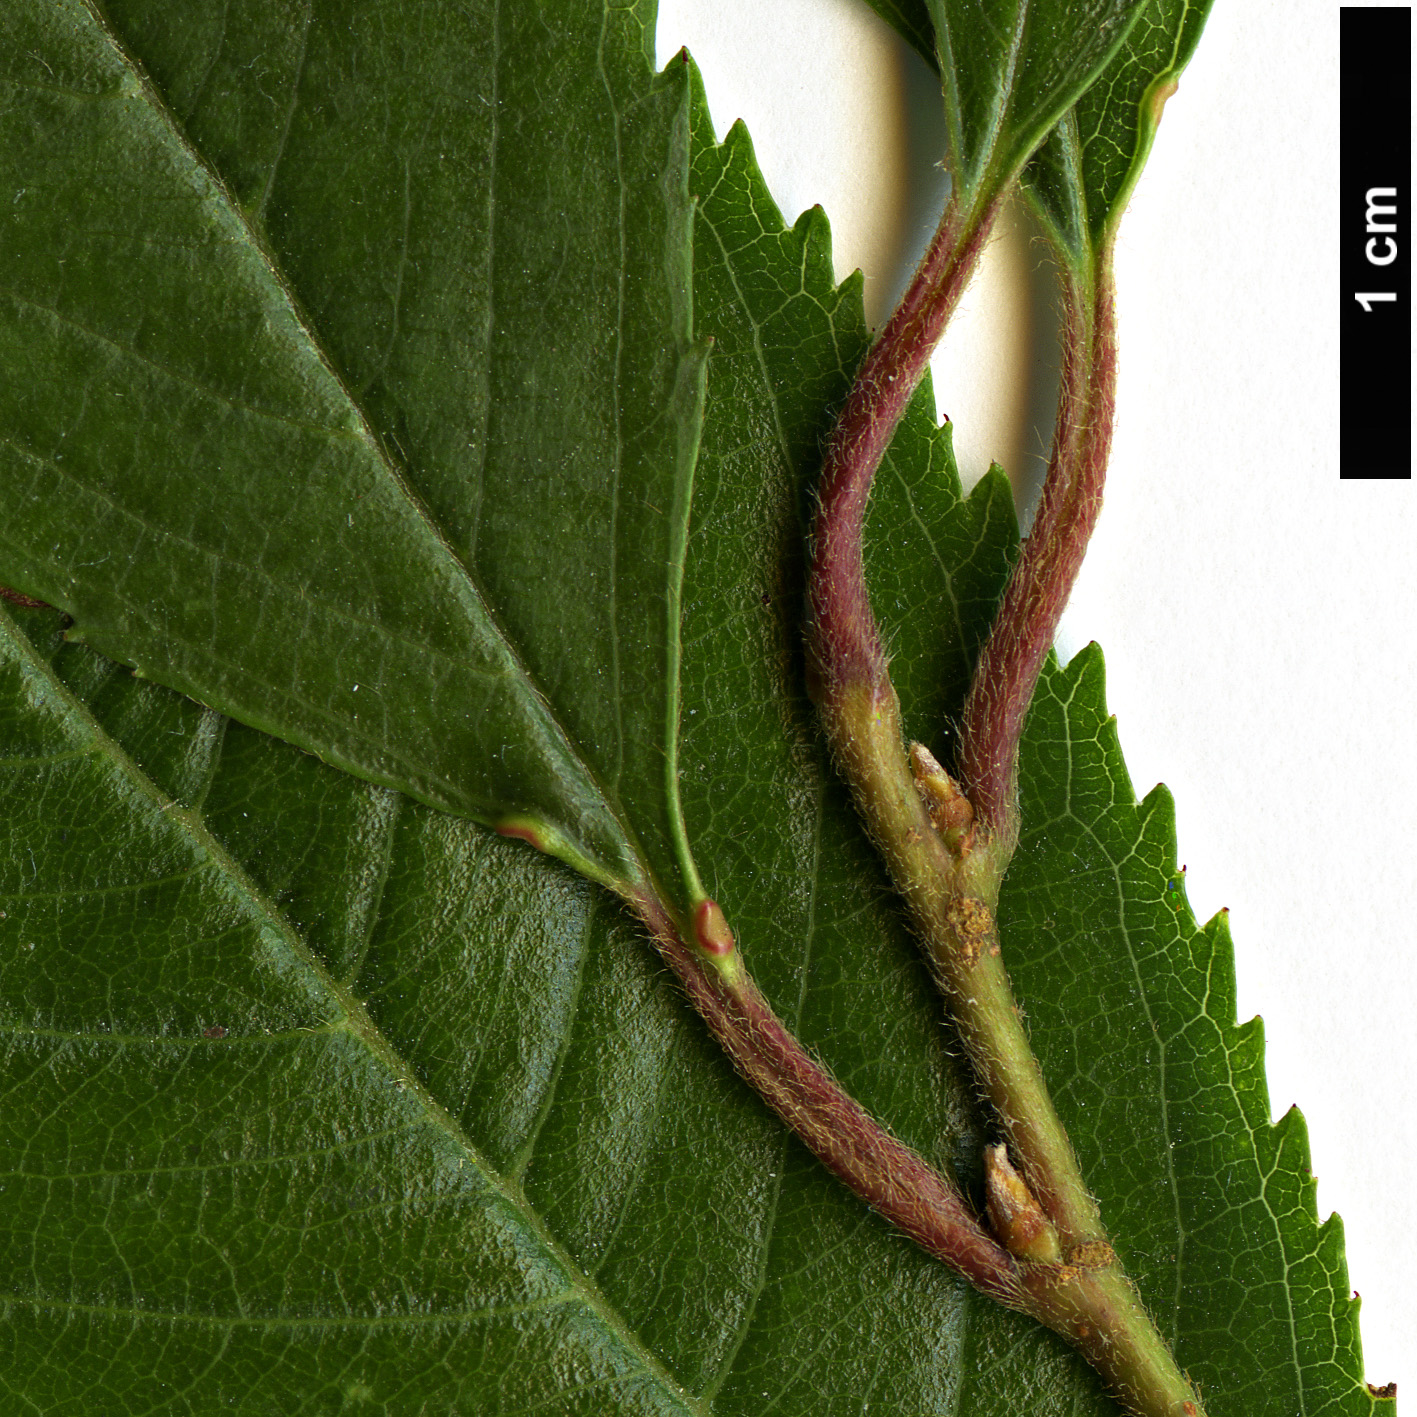 High resolution image: Family: Rosaceae - Genus: Prunus - Taxon: subhirtella